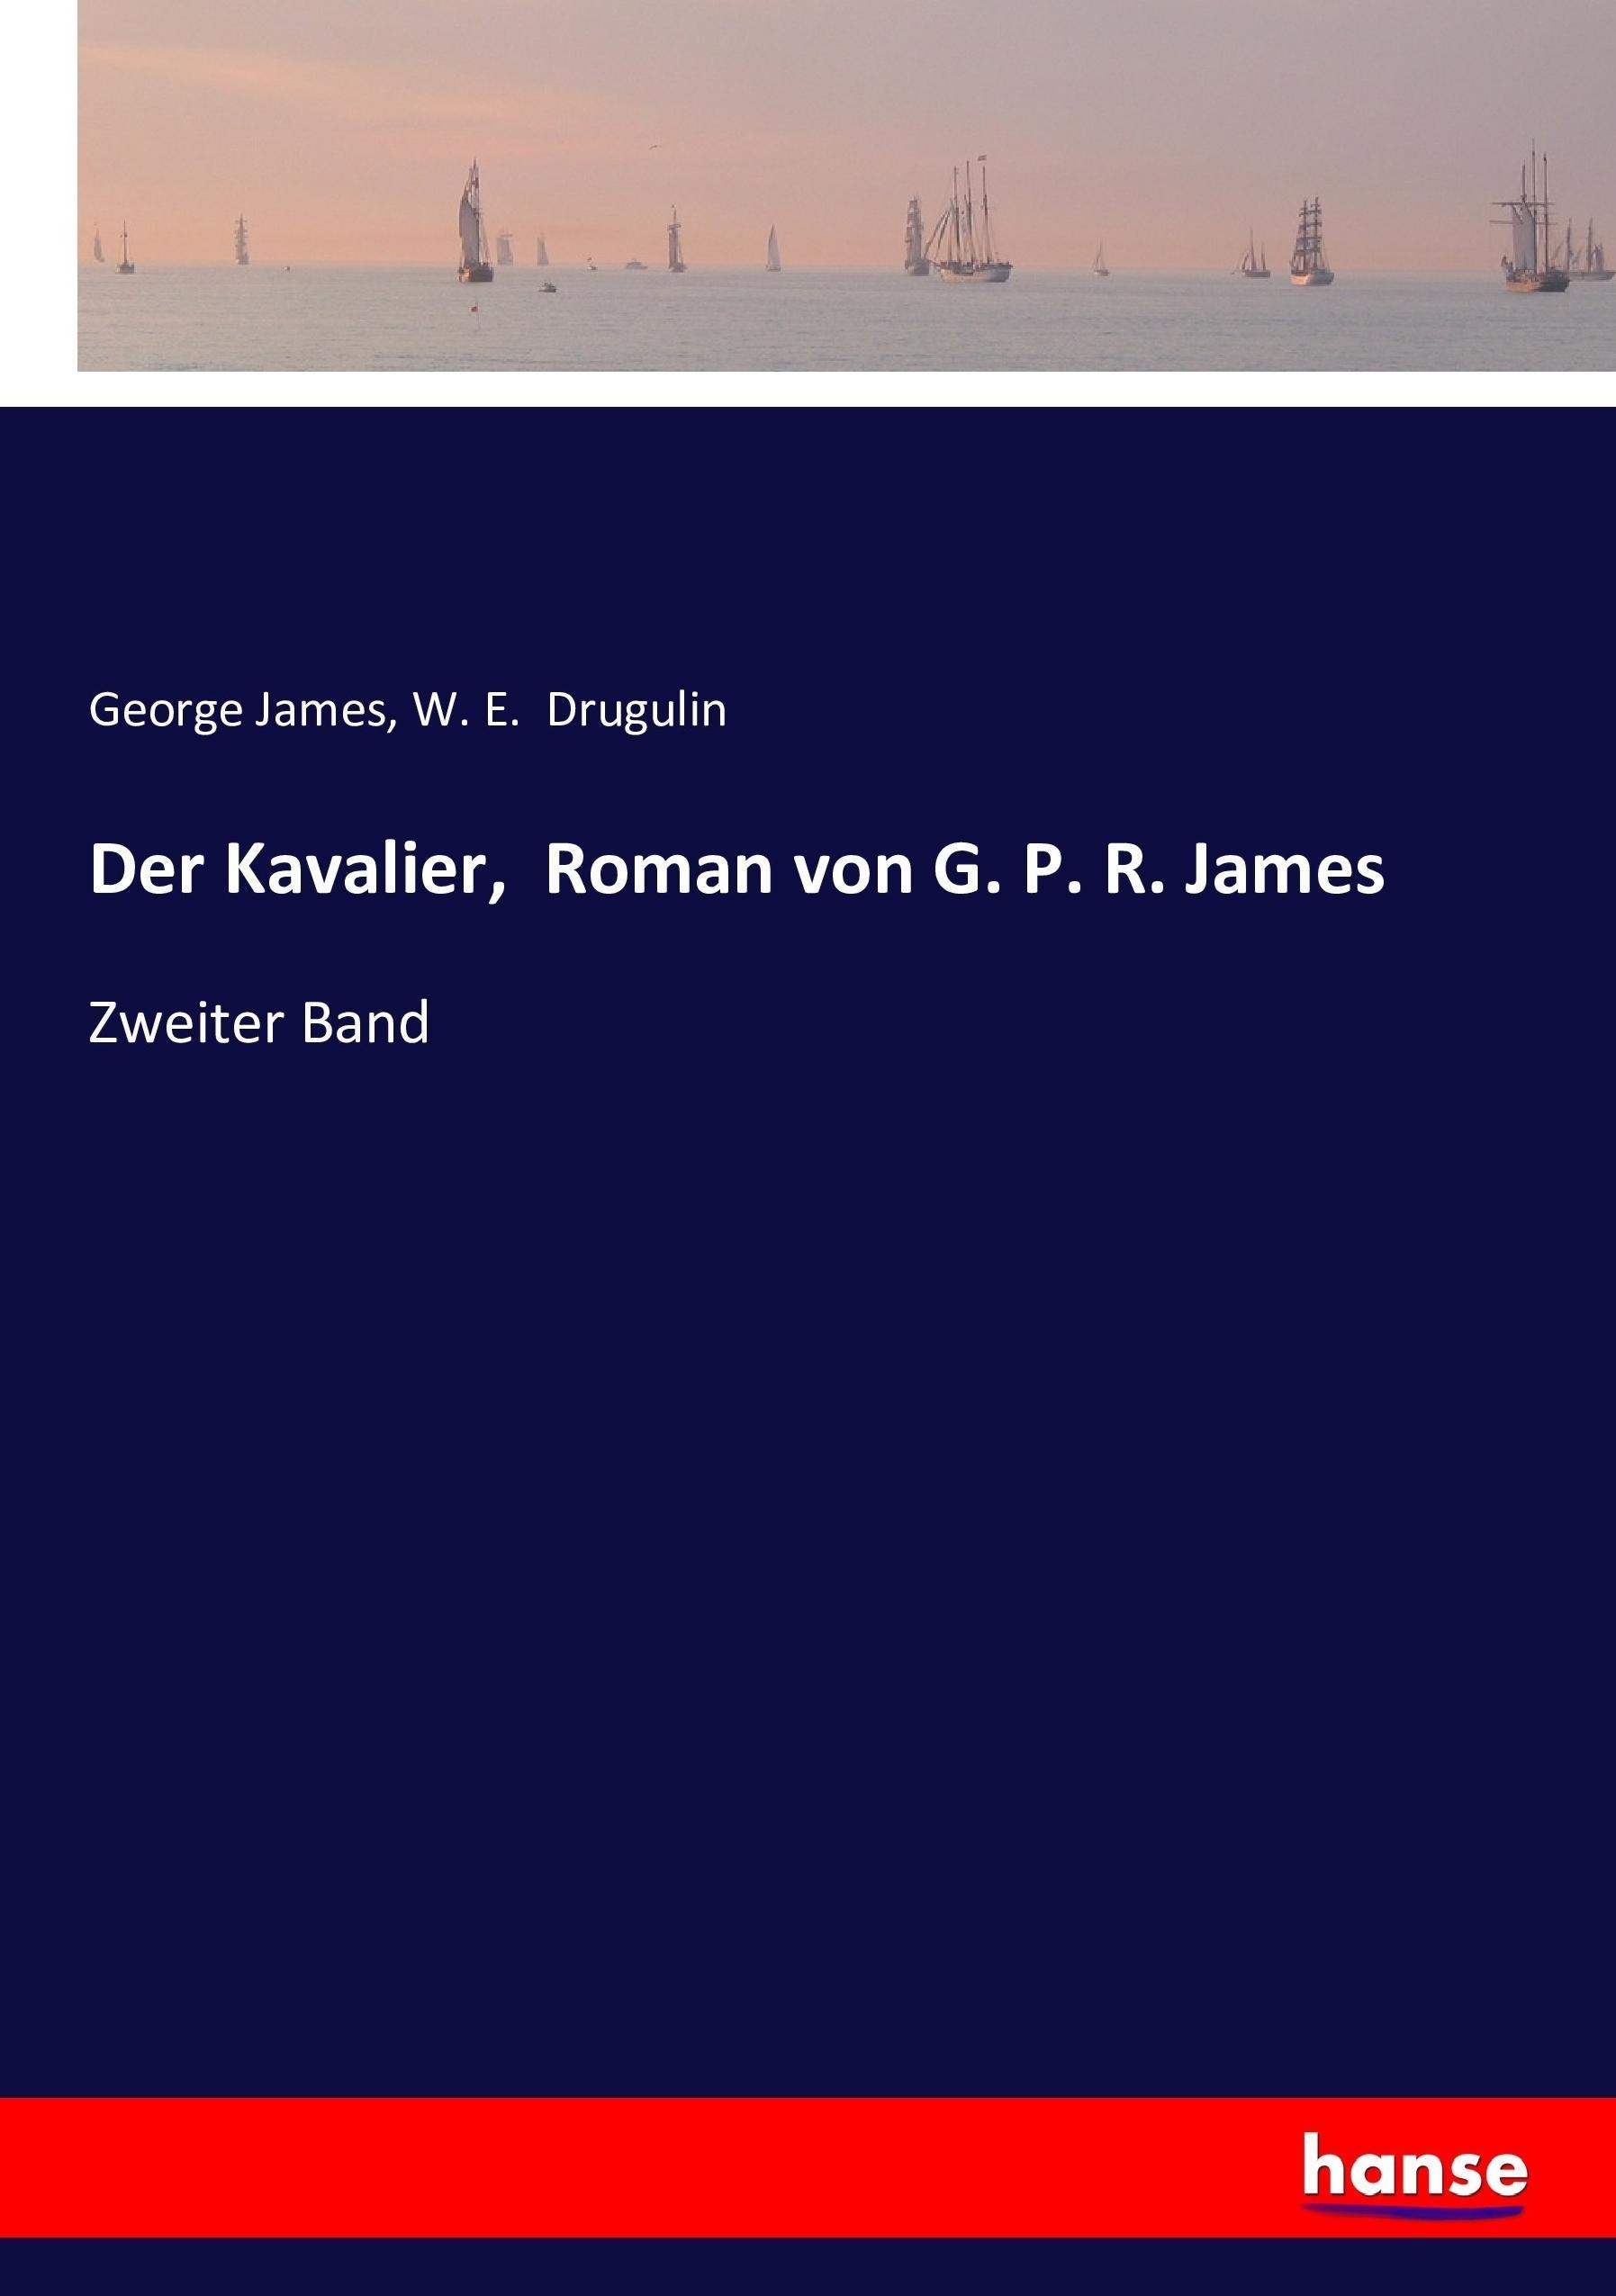 Der Kavalier, Roman von G. P. R. James - James, George Drugulin, W. E.